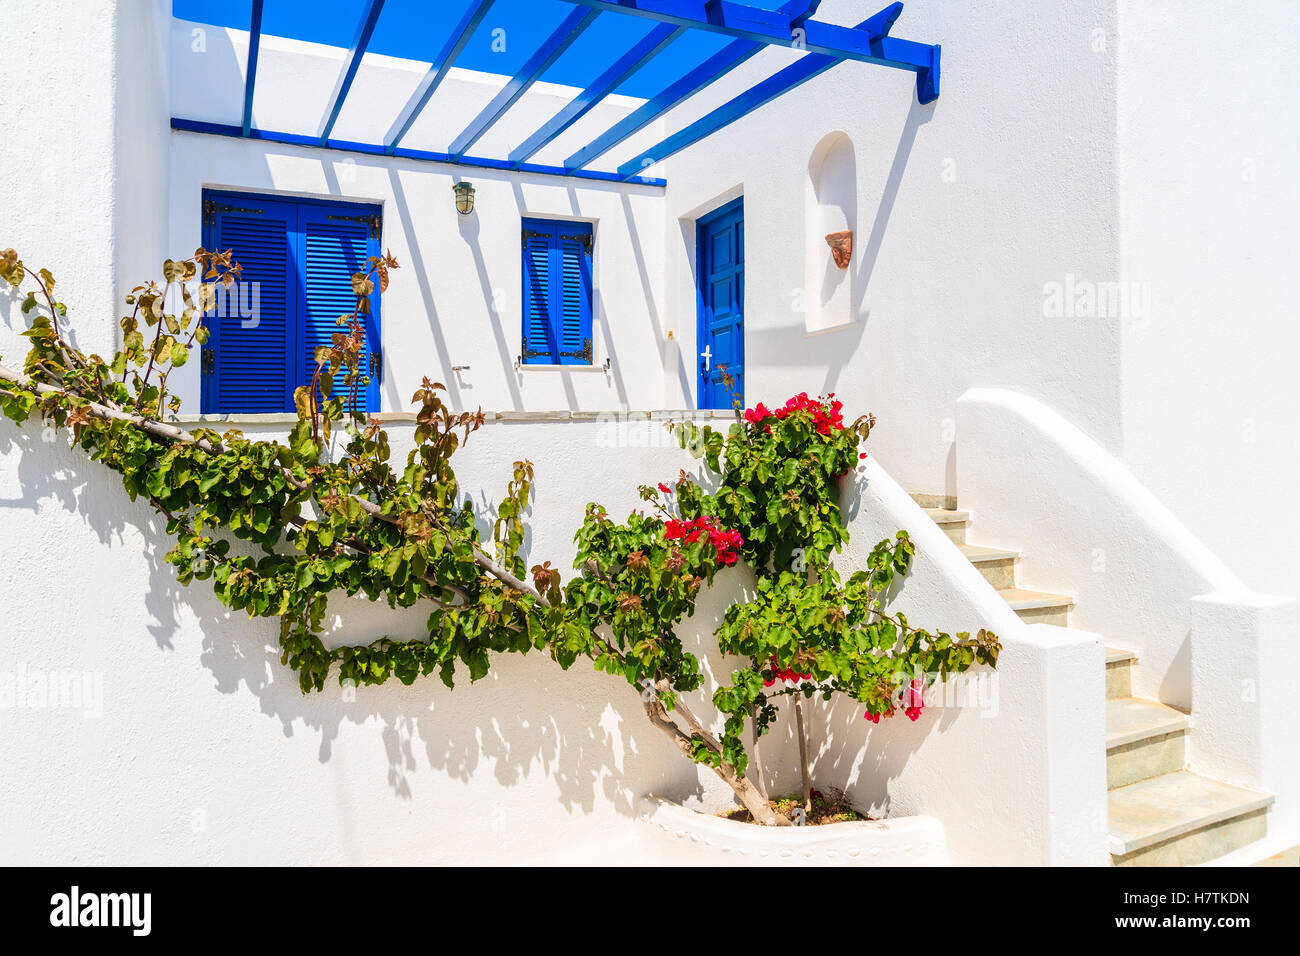 Typisch weiß getünchten griechischen Haus in Naoussa Stadt auf der Insel Paros, Griechenland Stockfoto